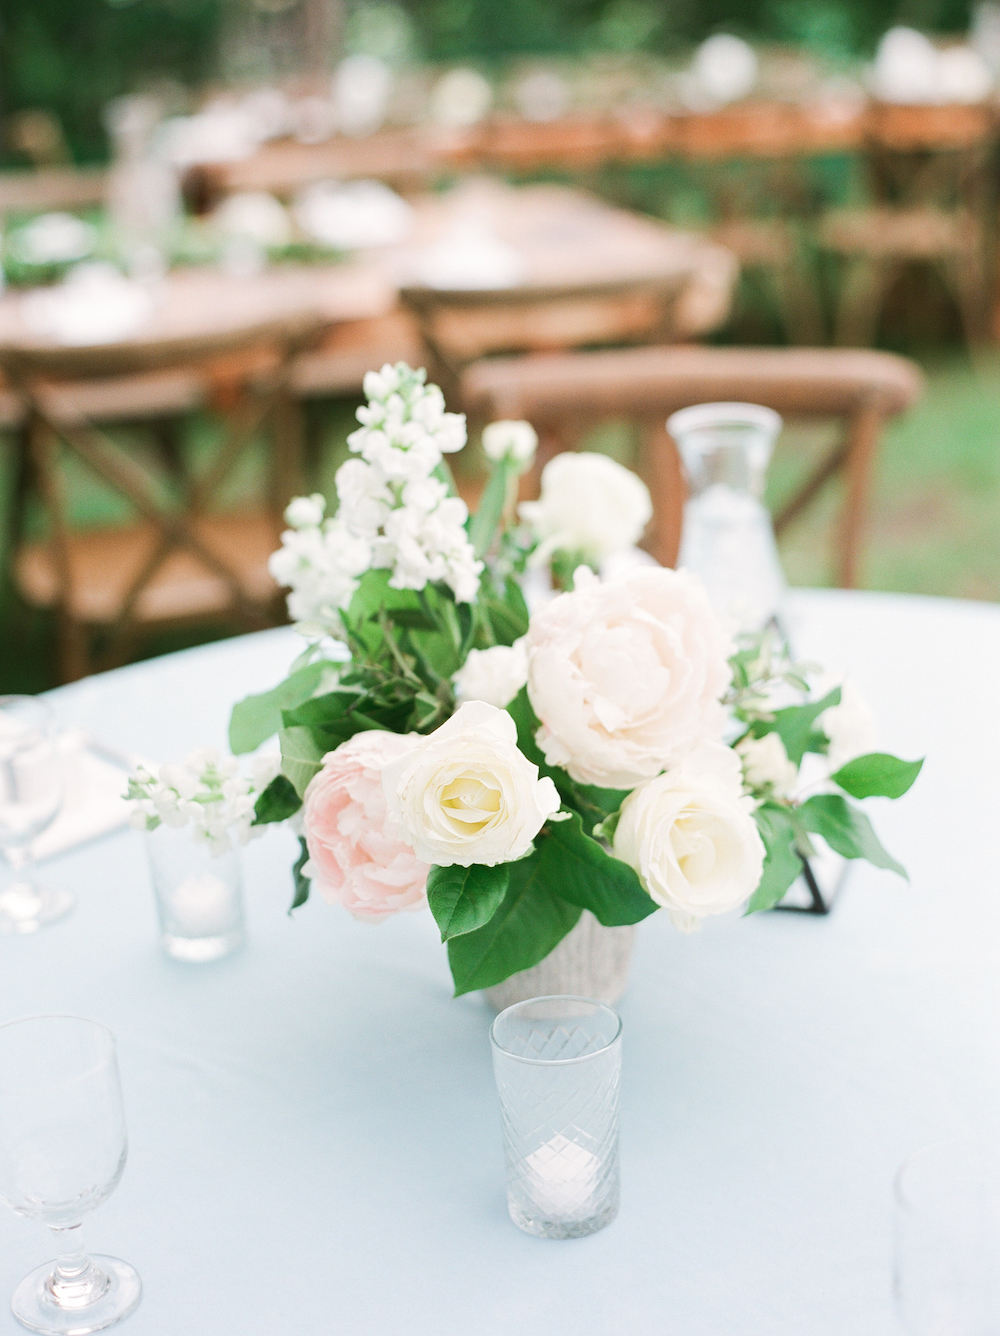 A flower arrangement for a wedding